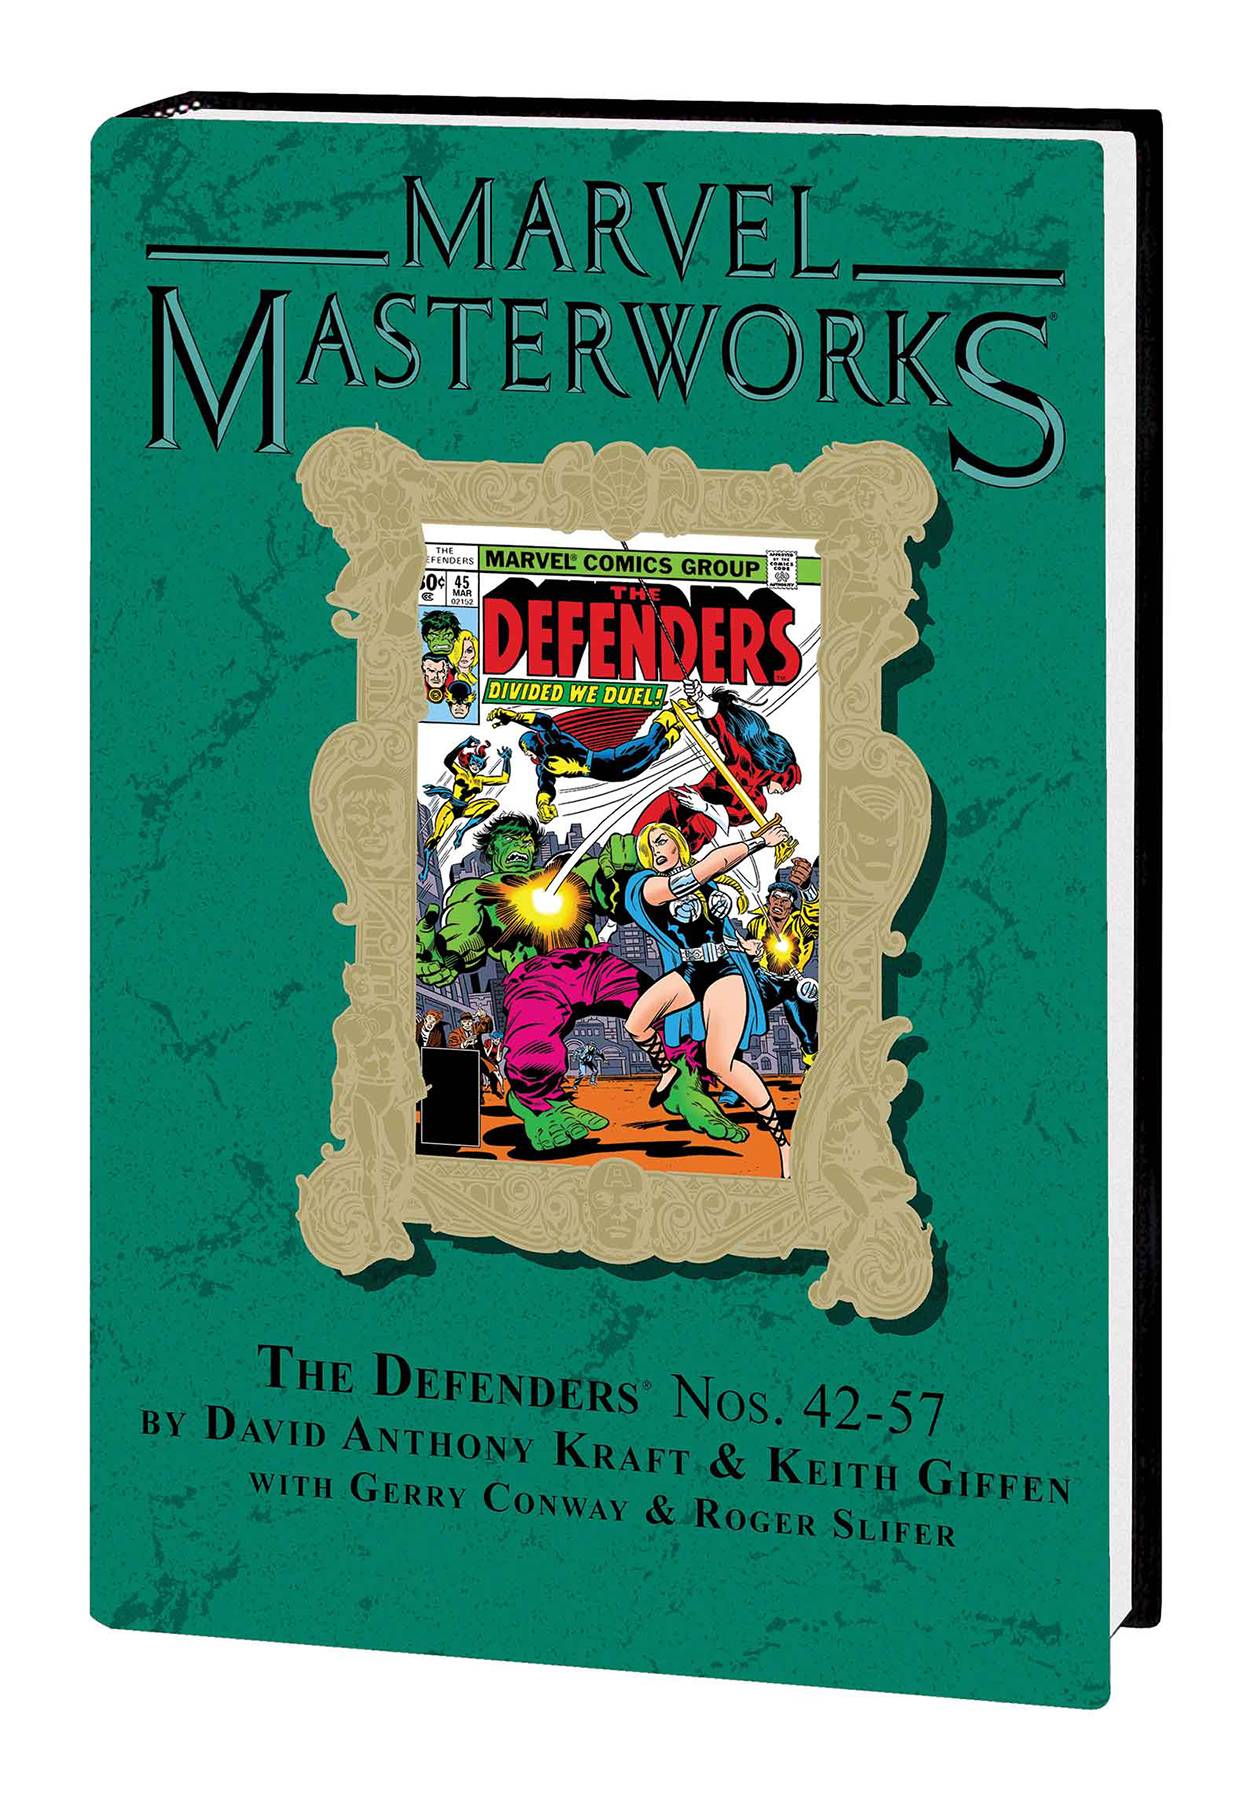 Marvel Masterworks Defenders Hardcover Volume 6 Direct Market Variant Edition 260